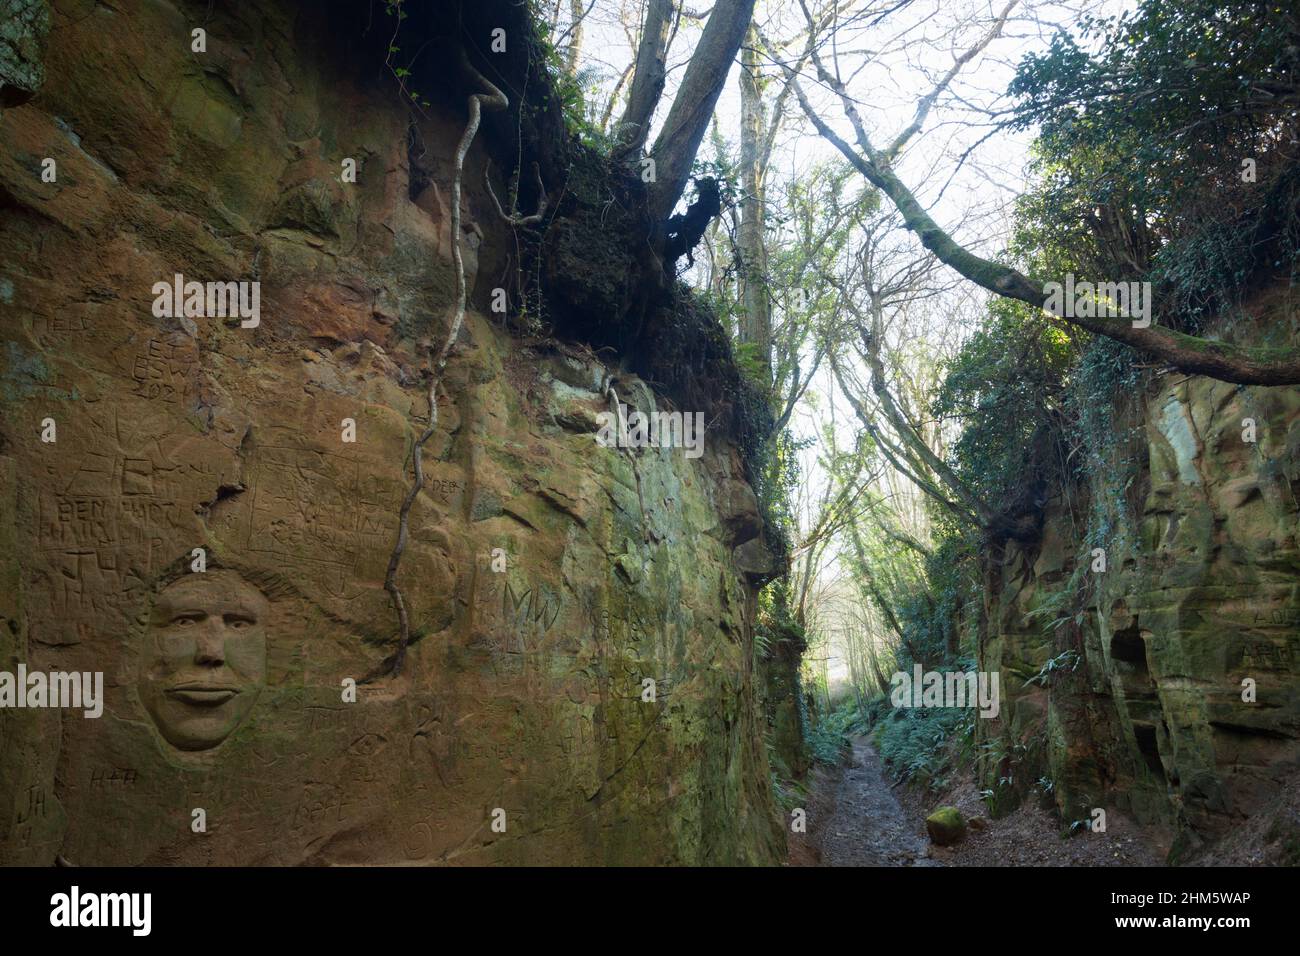 Sculpter le visage dans un holloway profond porté dans le sol en grès mou de centaines d'années de chute de pied. Dorset, Royaume-Uni. Banque D'Images